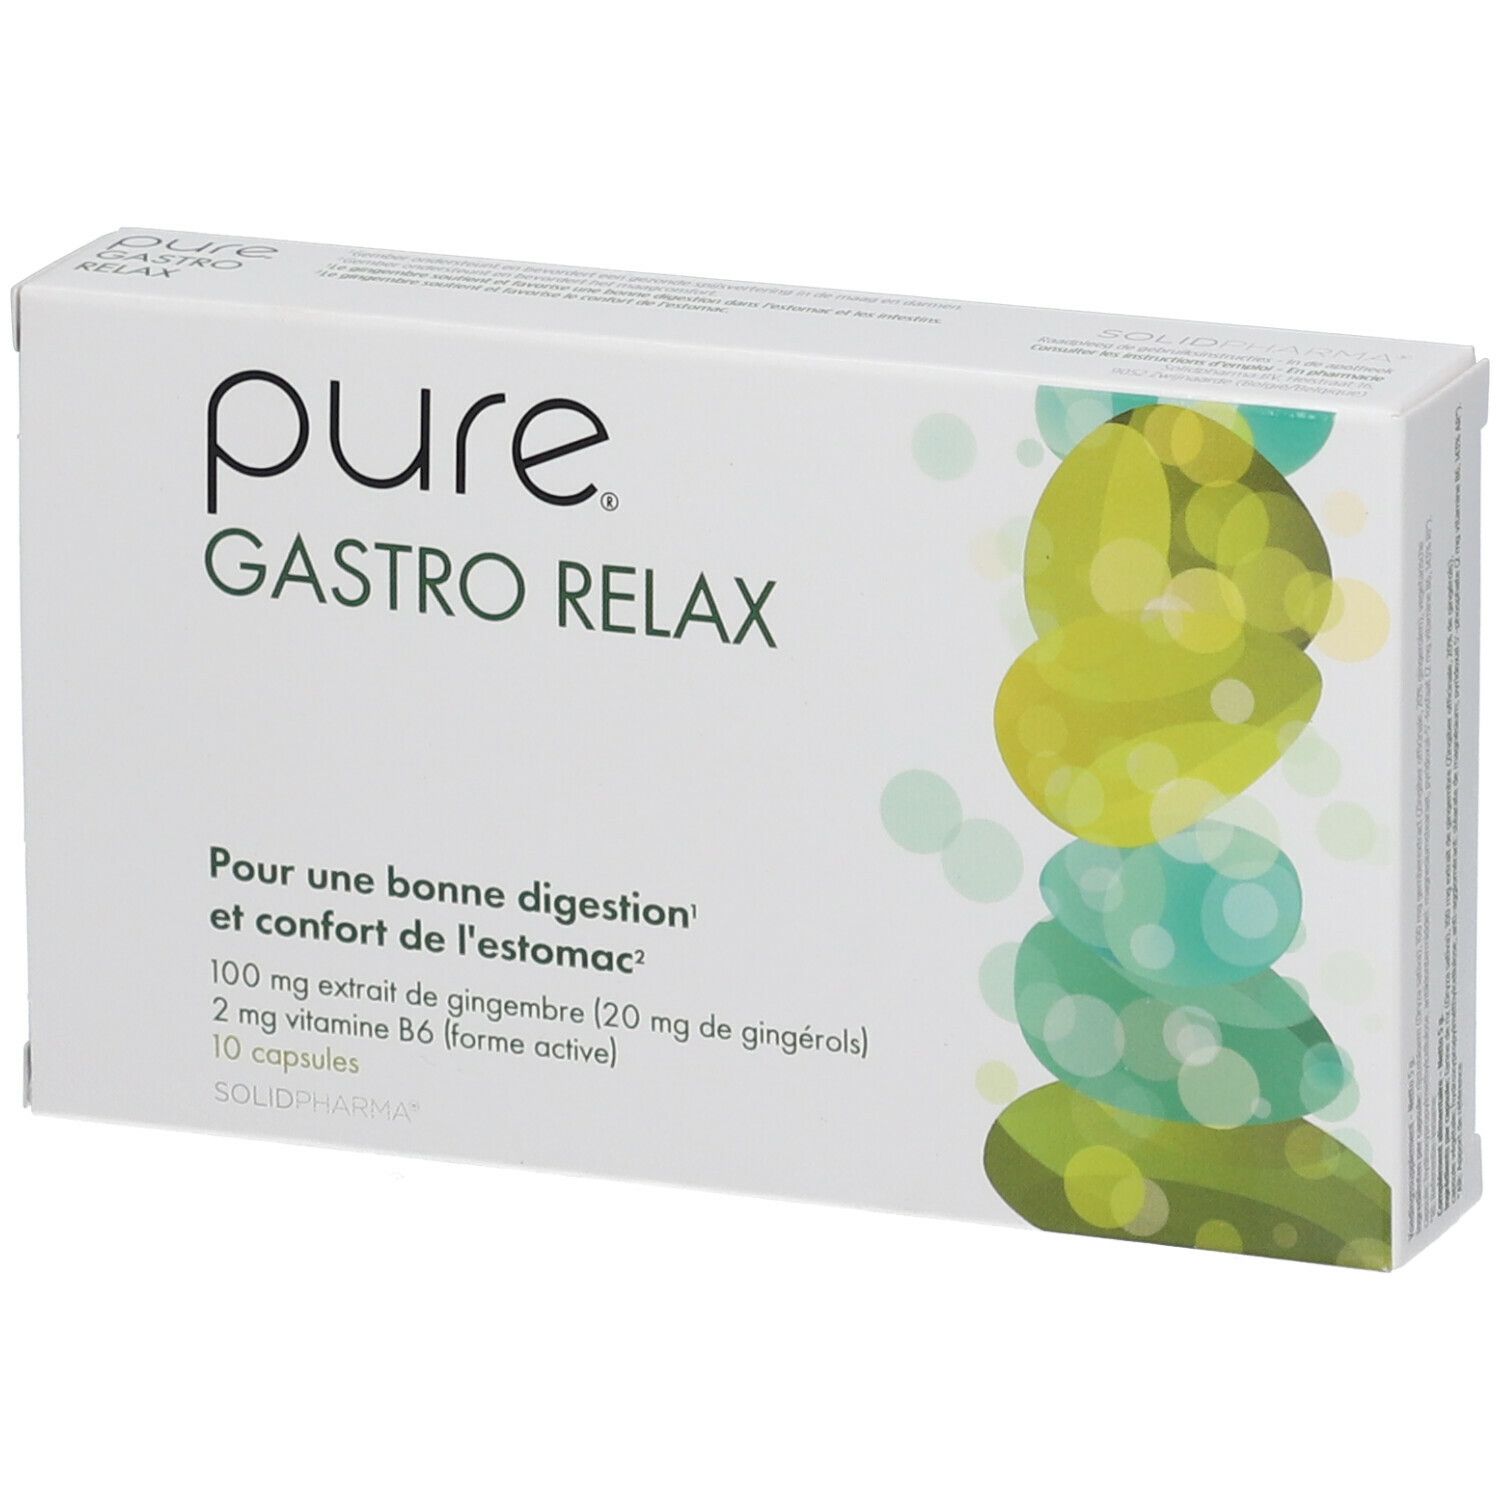 Pure® Gastro Relax